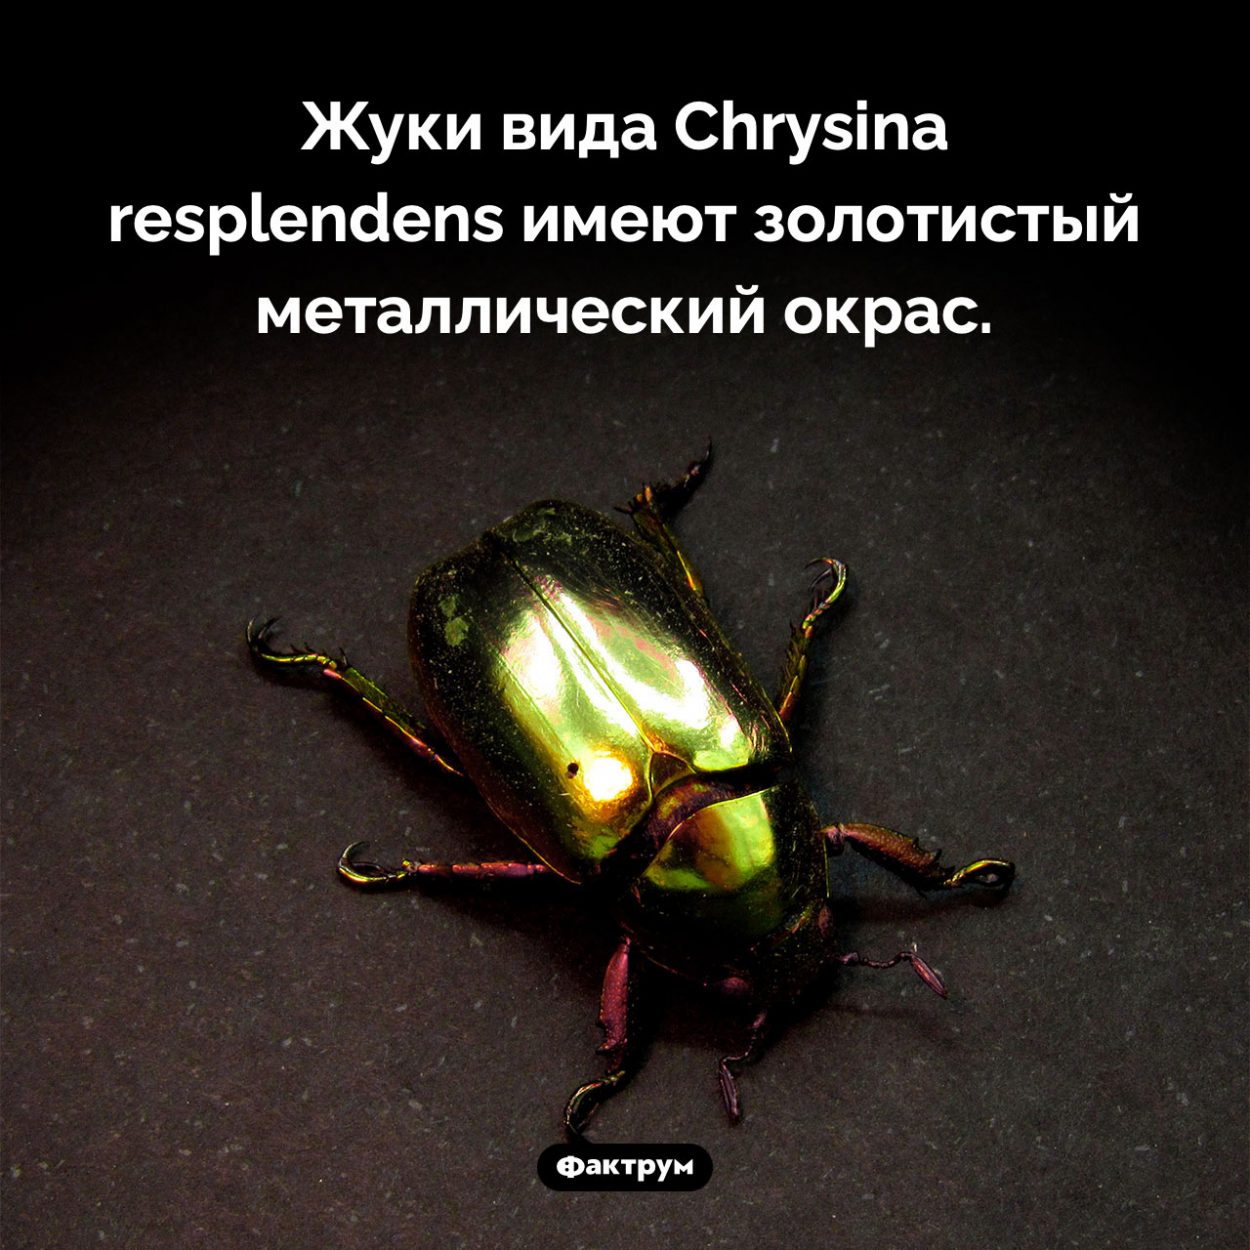 Зеркальные жуки. Жуки вида Chrysina resplendens имеют золотистый металлический окрас.